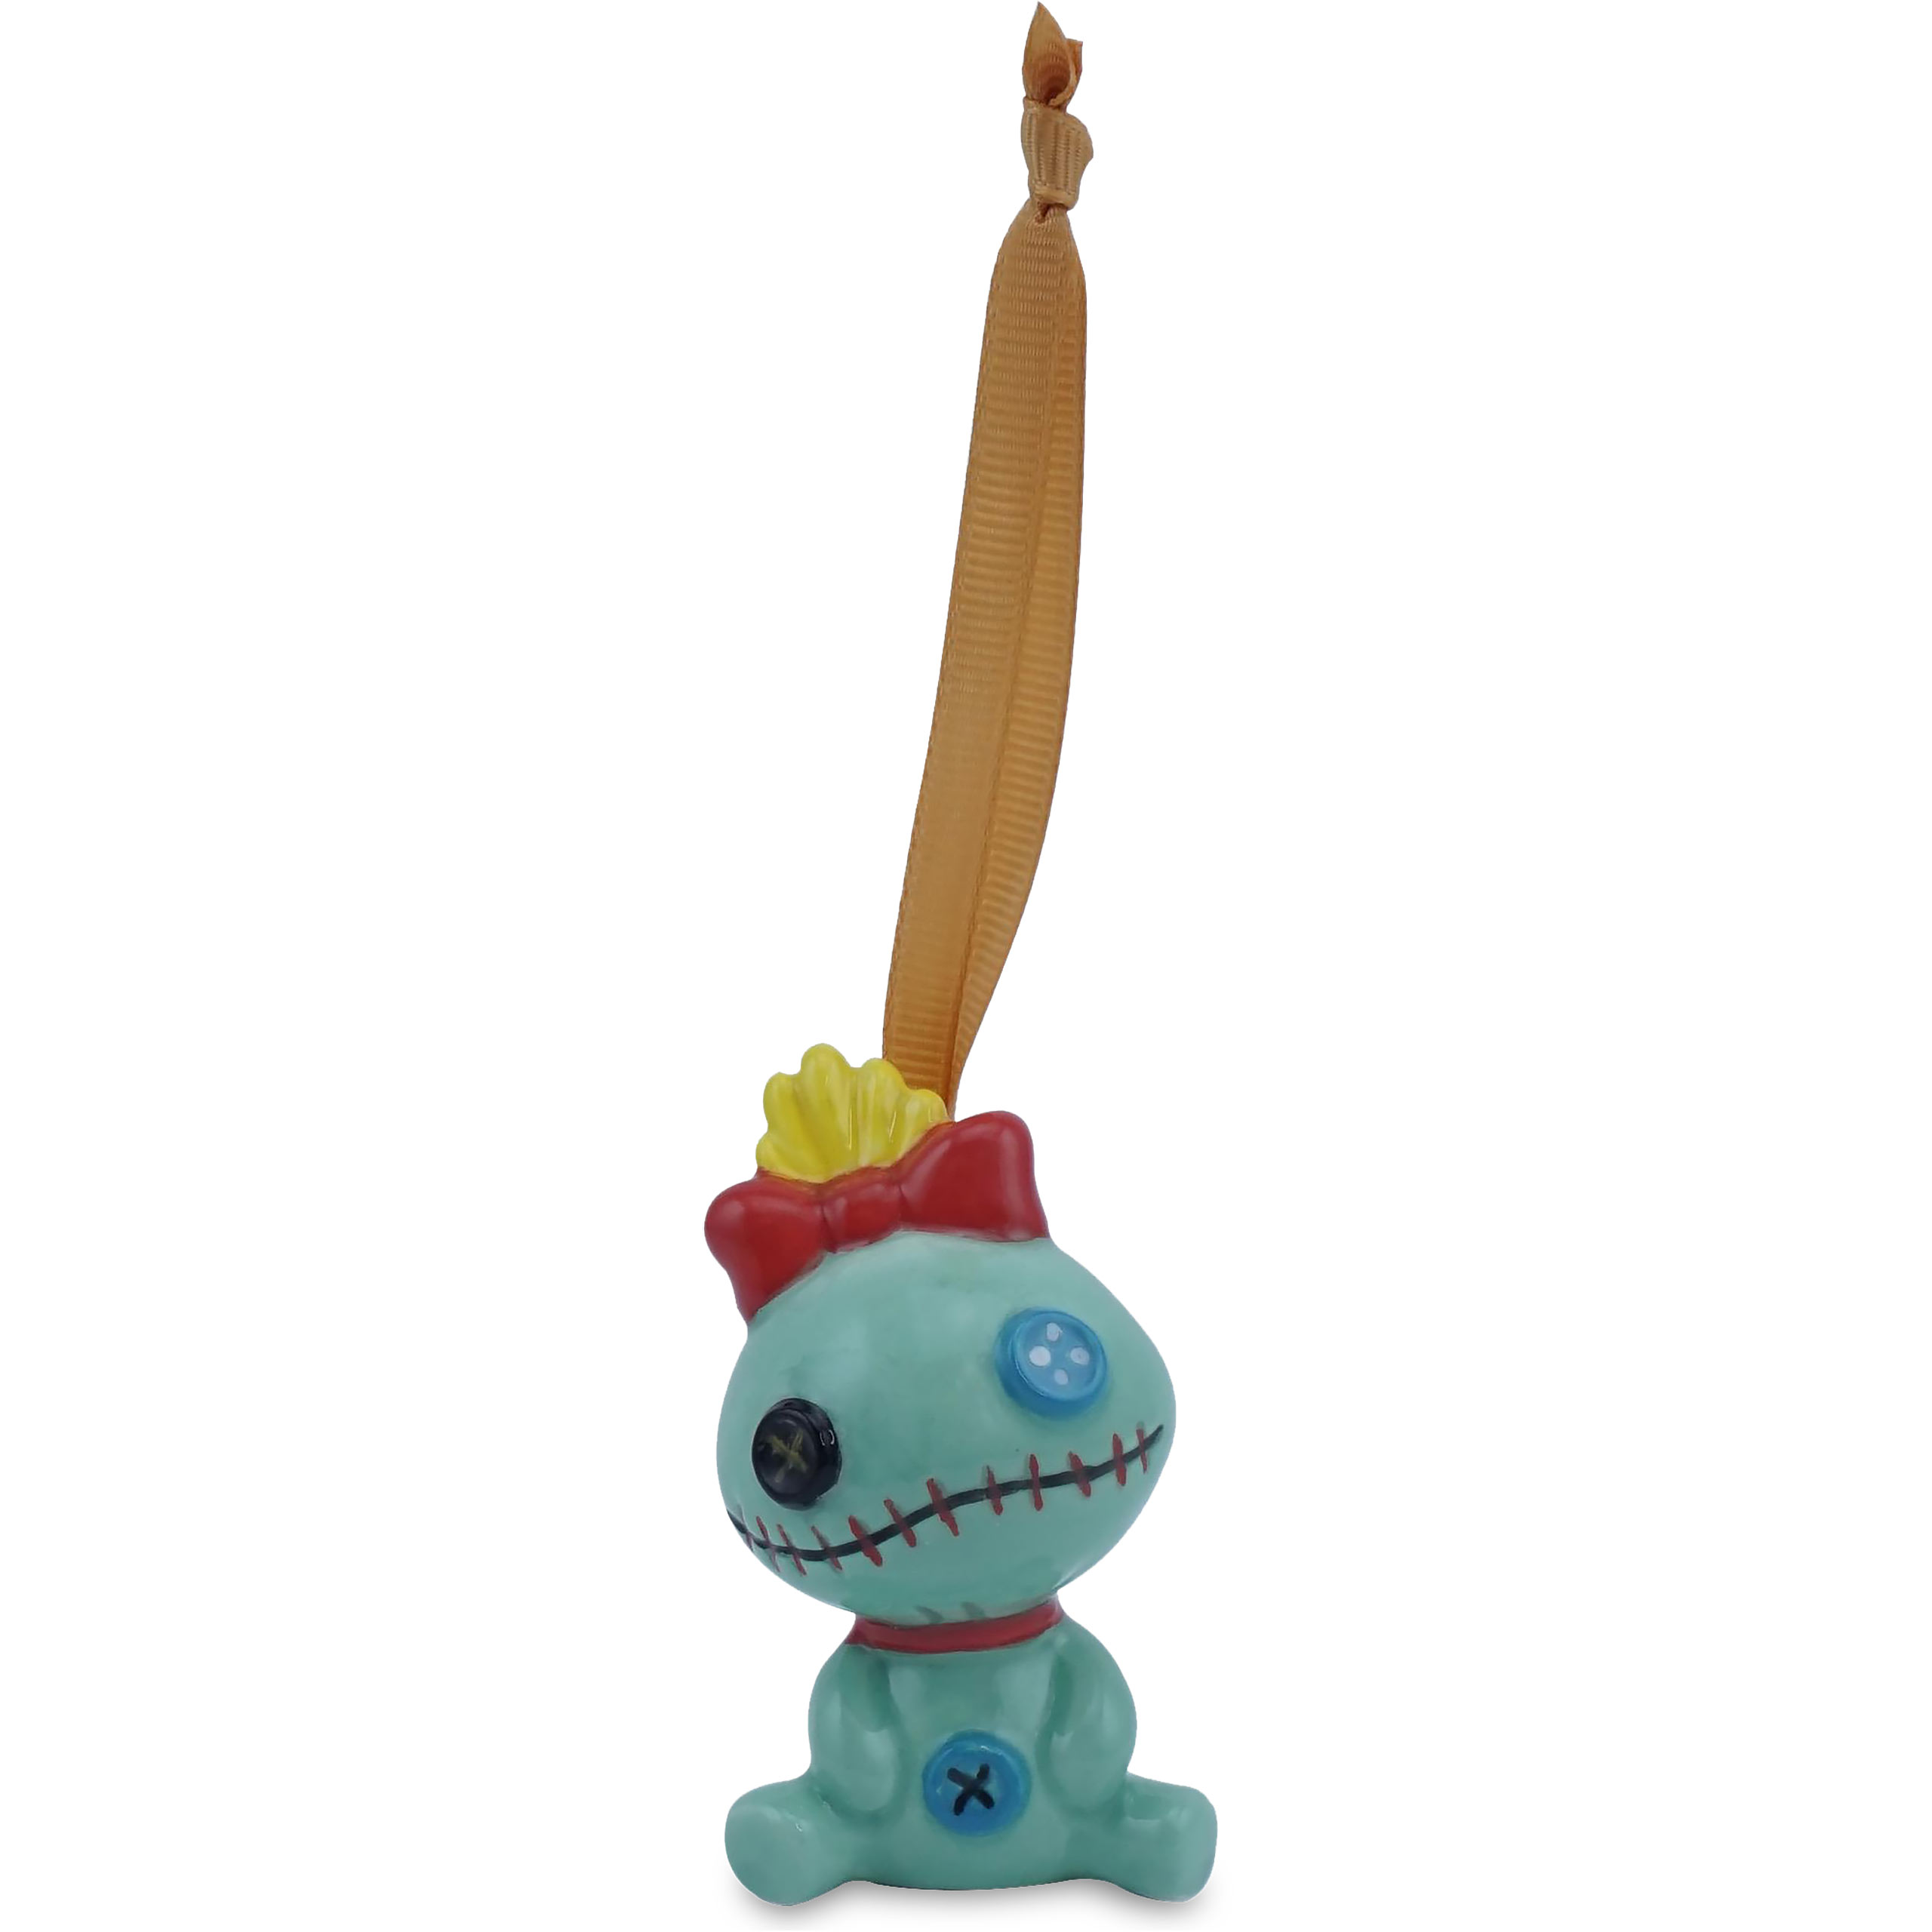 Lilo & Stitch - Scrump Christmas Tree Ornament